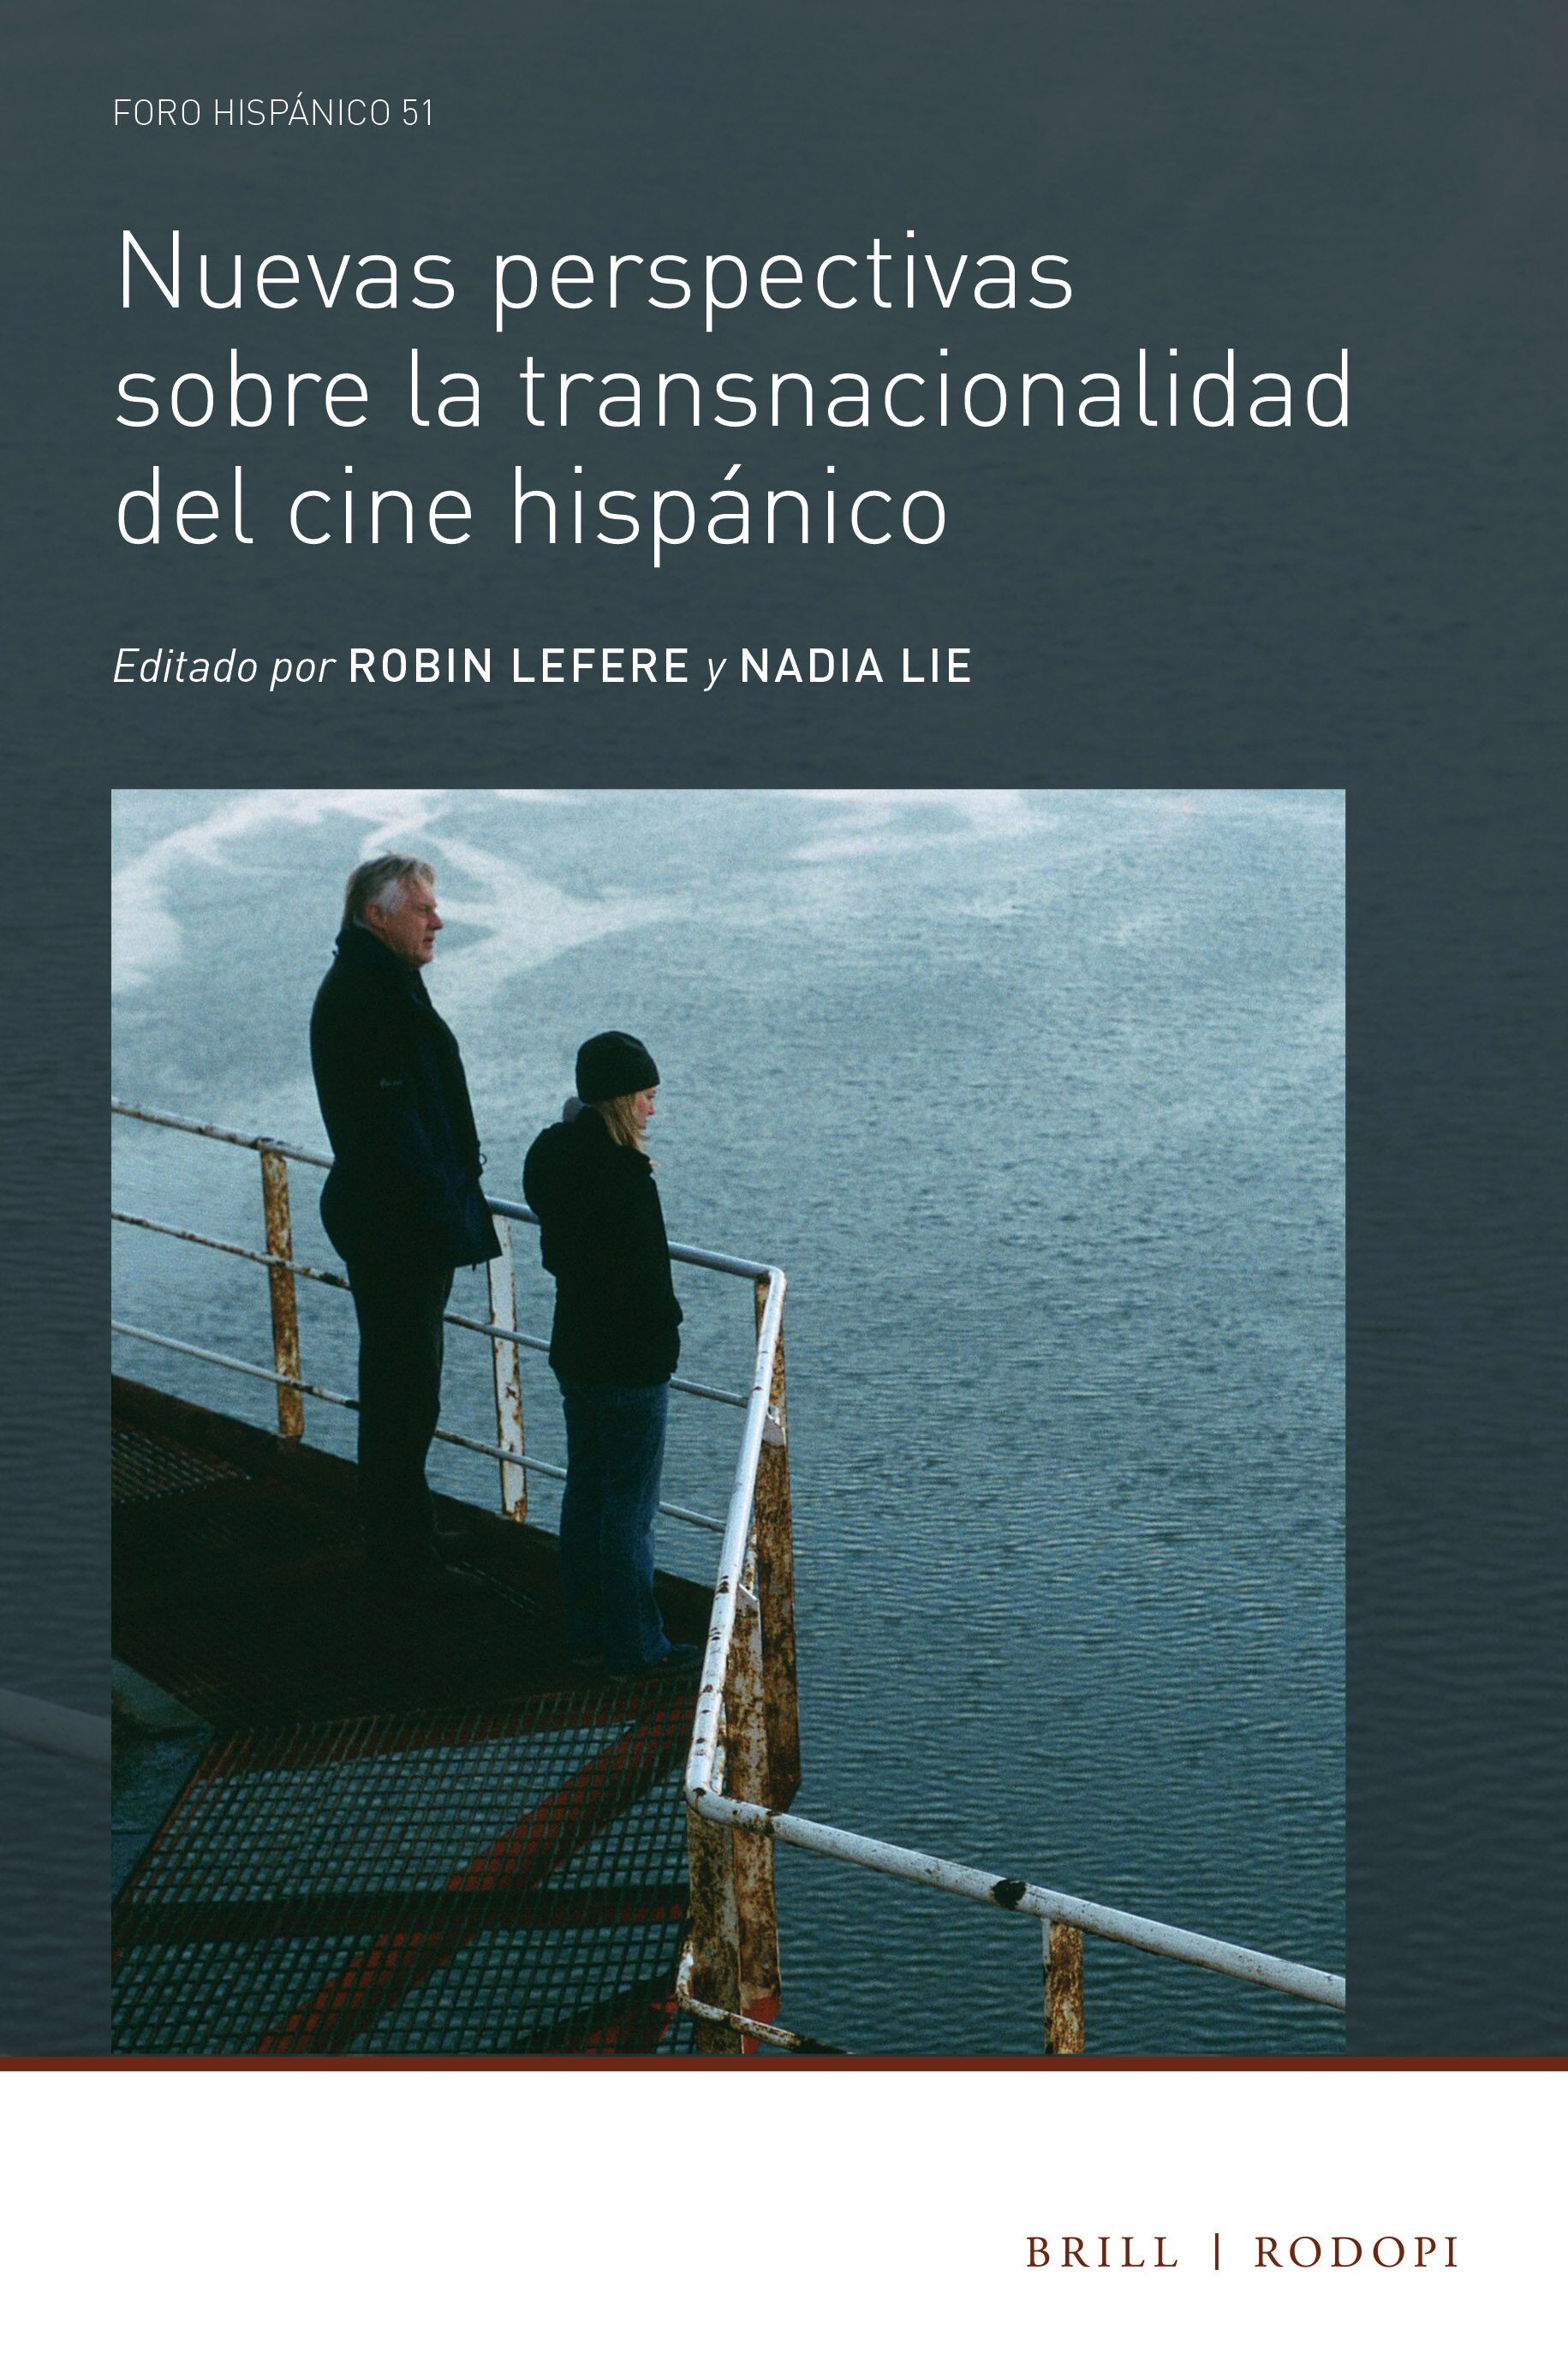 Imagen de portada del libro Nuevas perspectivas sobre la transnacionalidad del cine hispánico